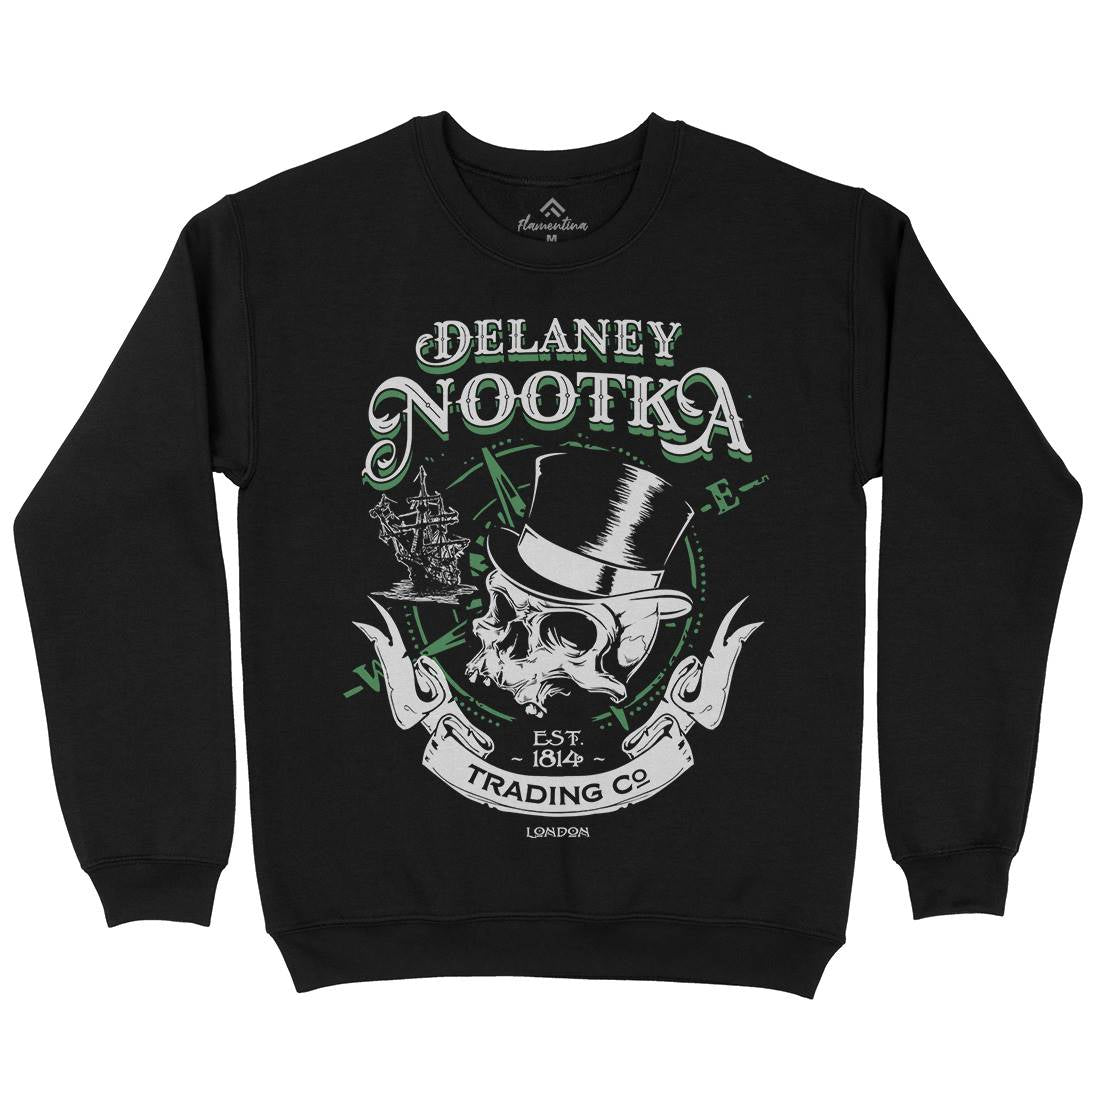 Delaney Nootka Kids Crew Neck Sweatshirt Retro D183